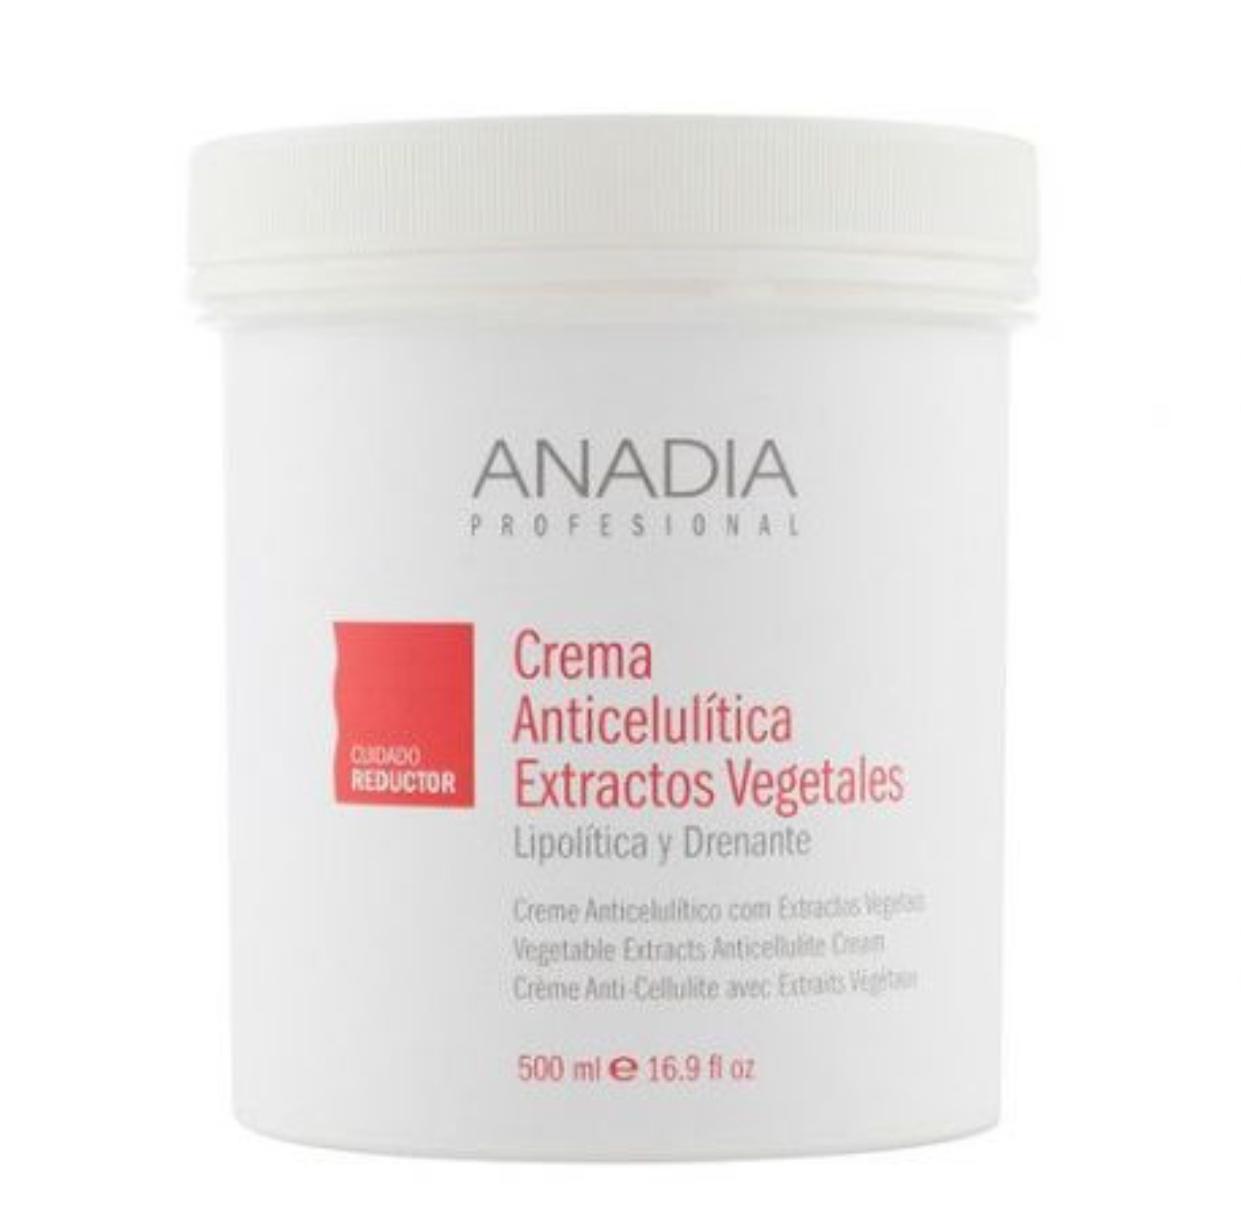 Crema anticelulitica con extractos vegetales 500ml Anadia